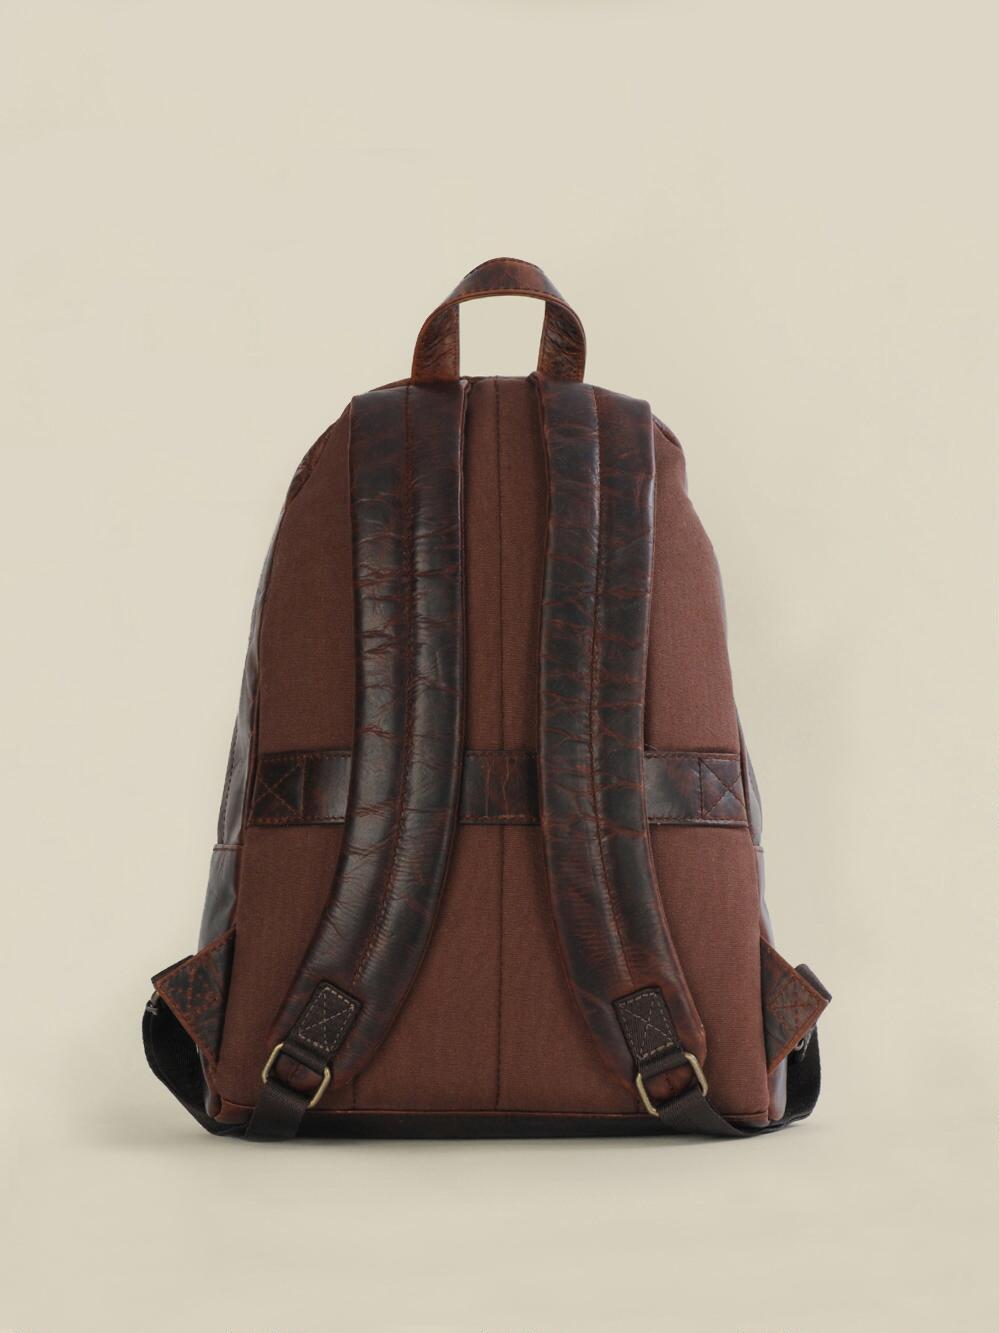 Ross Gold/ Tan Calvin Klein Backpack, Never Worn,... - Depop